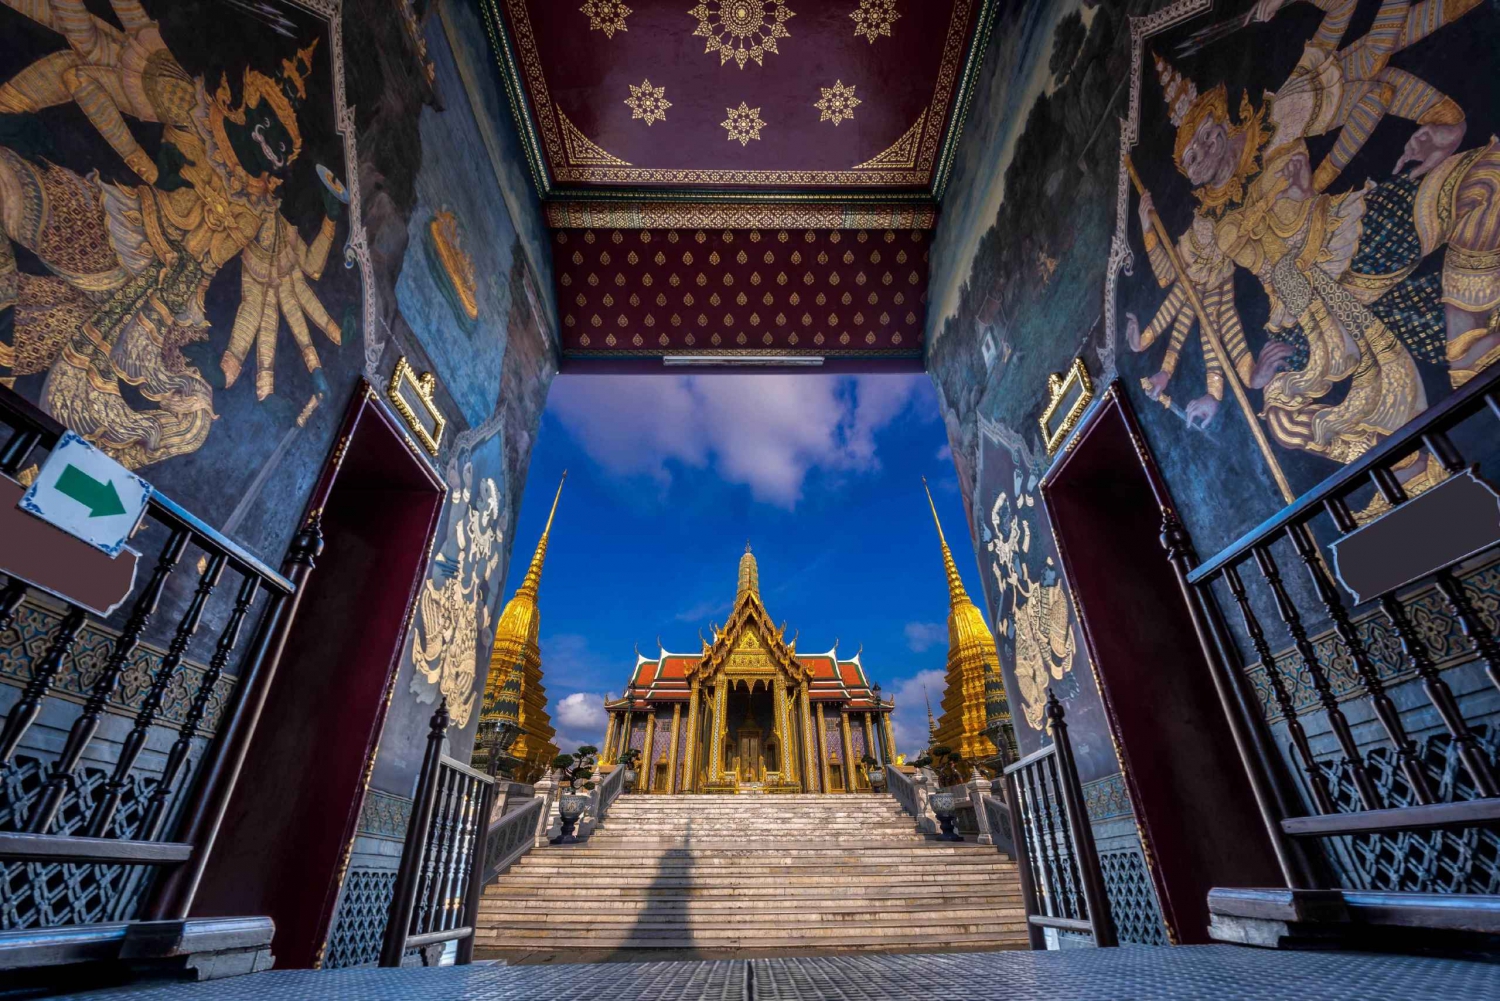 Bangkok: Wat Arun and Wat Pho Historical Evening Tour